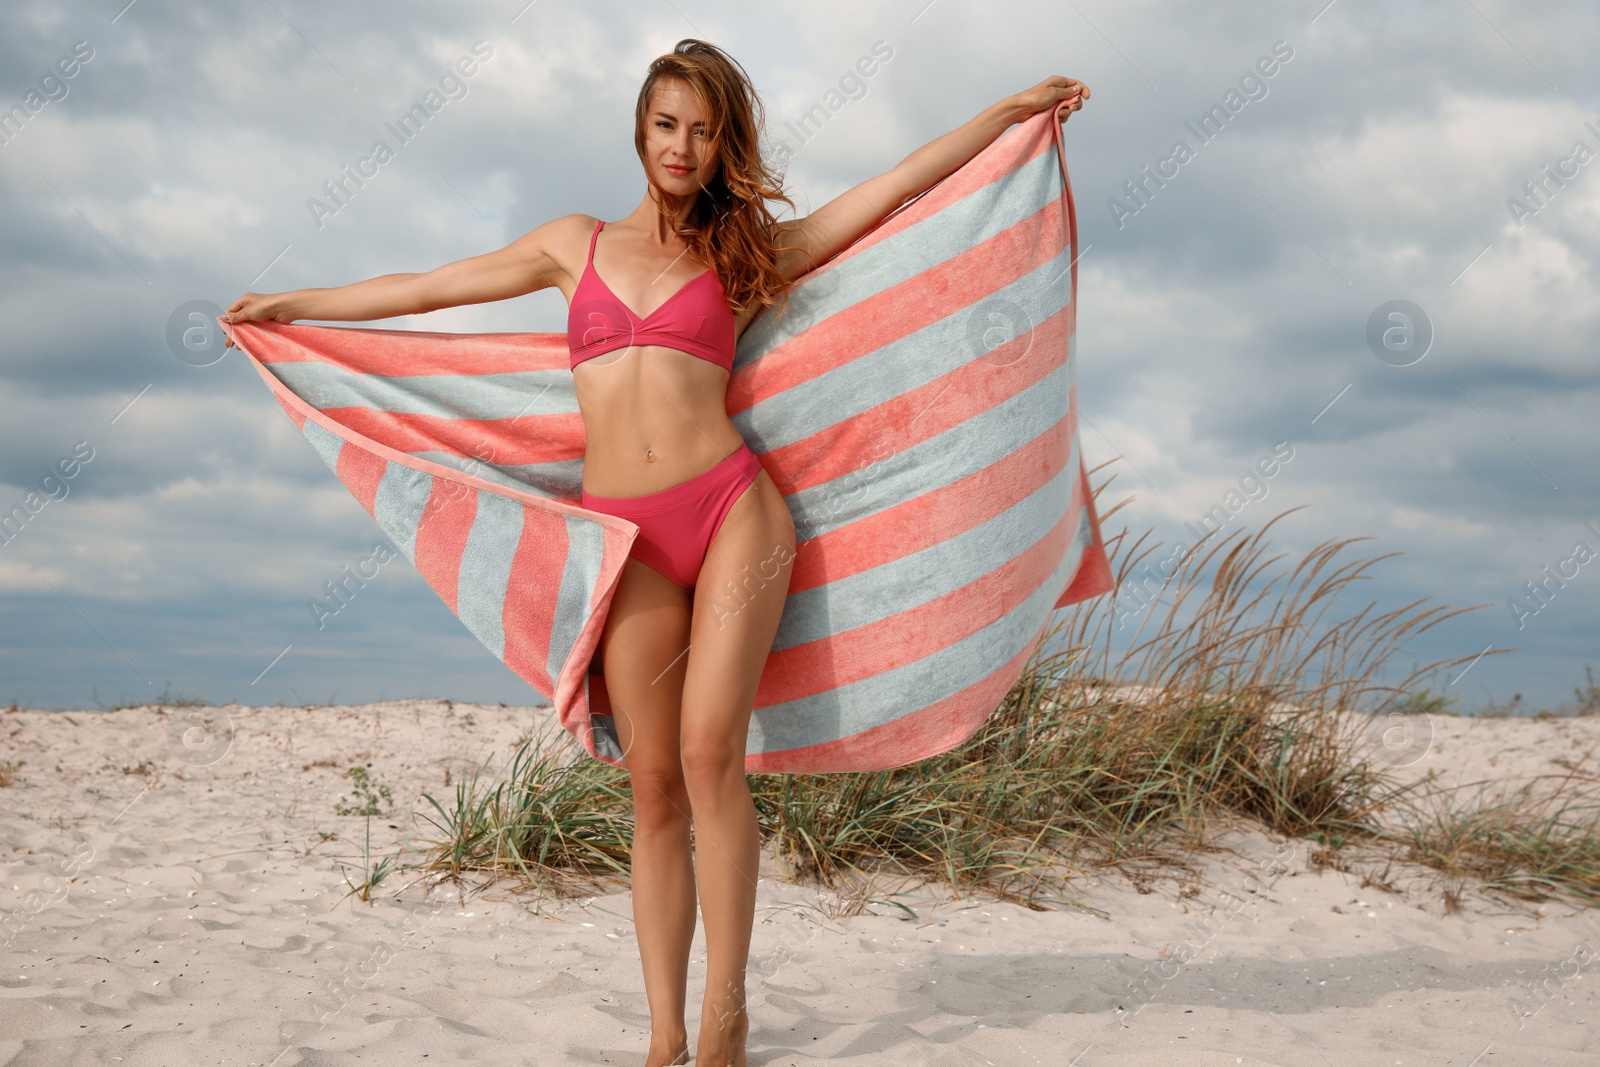 Photo of Beautiful woman in bikini with beach towel on sand